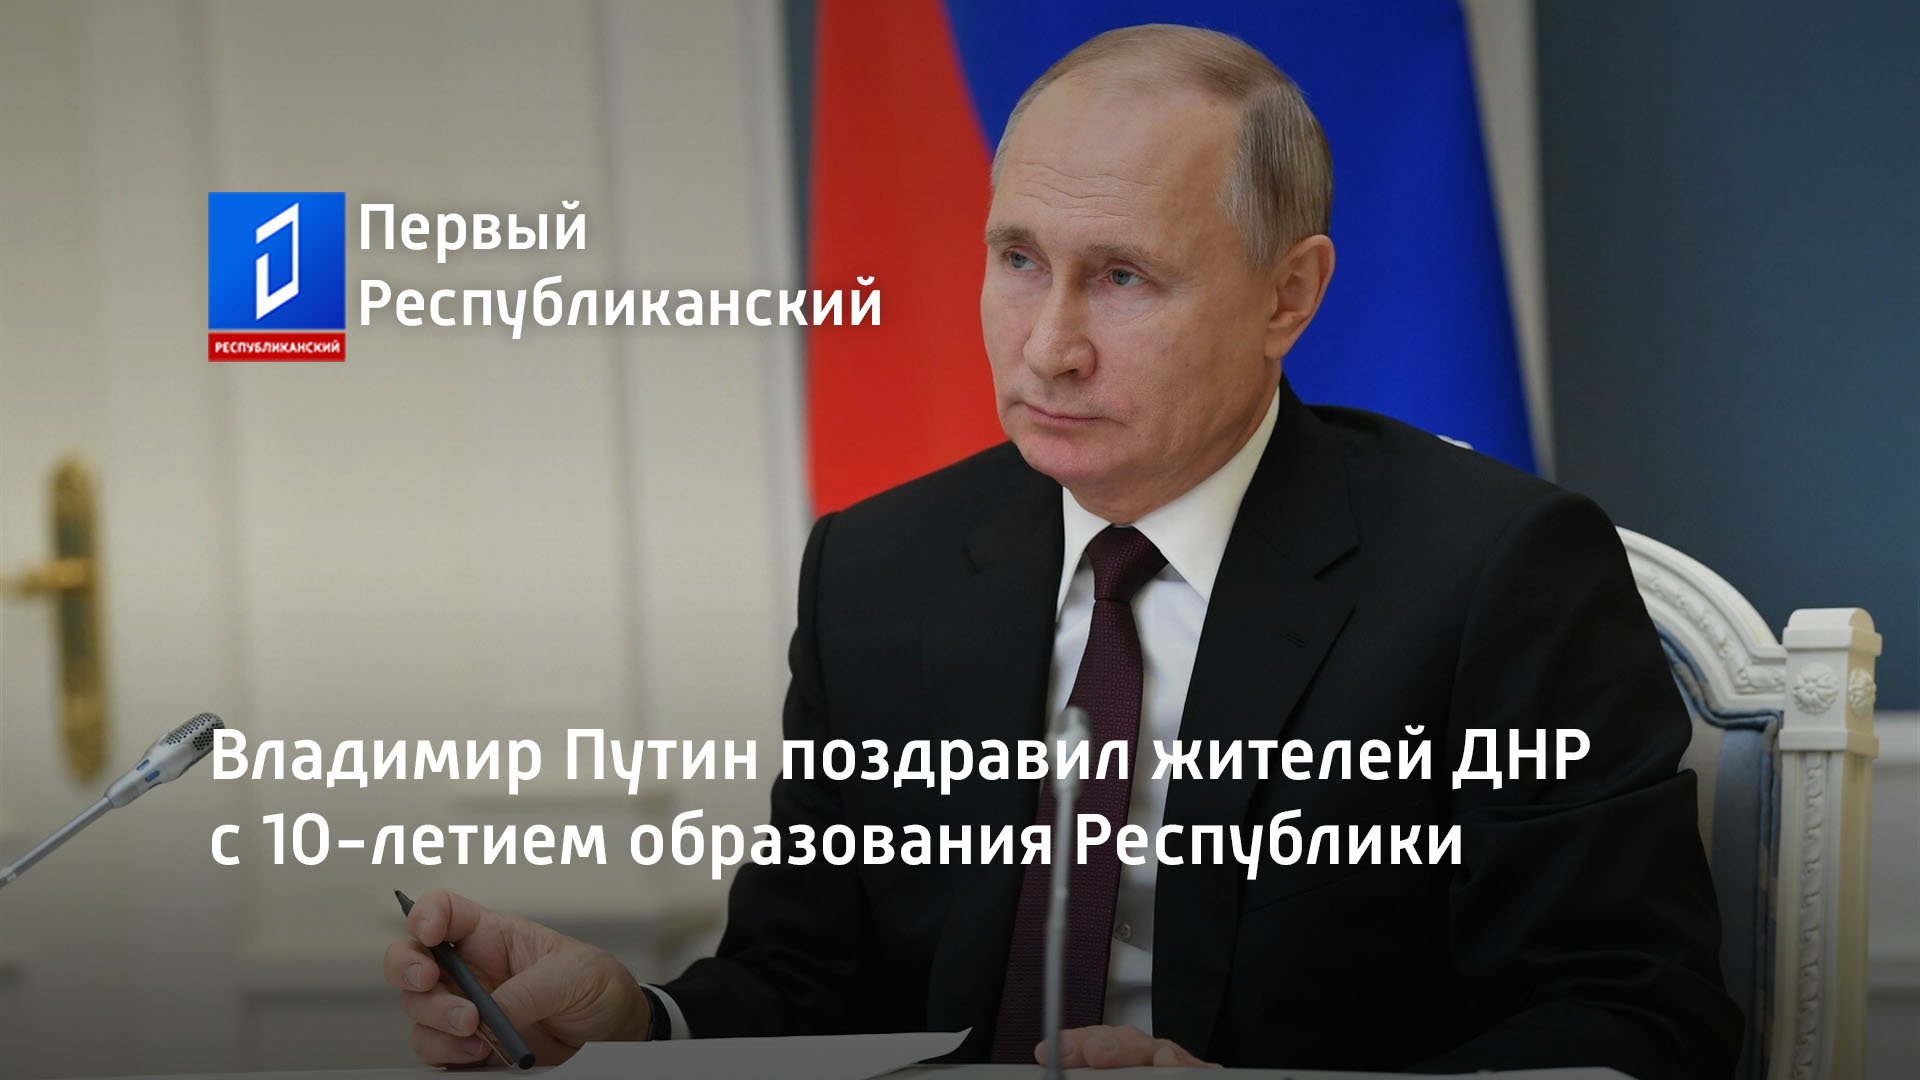 Владимир Путин поздравил жителей ДНР с 10-летием образования Республики